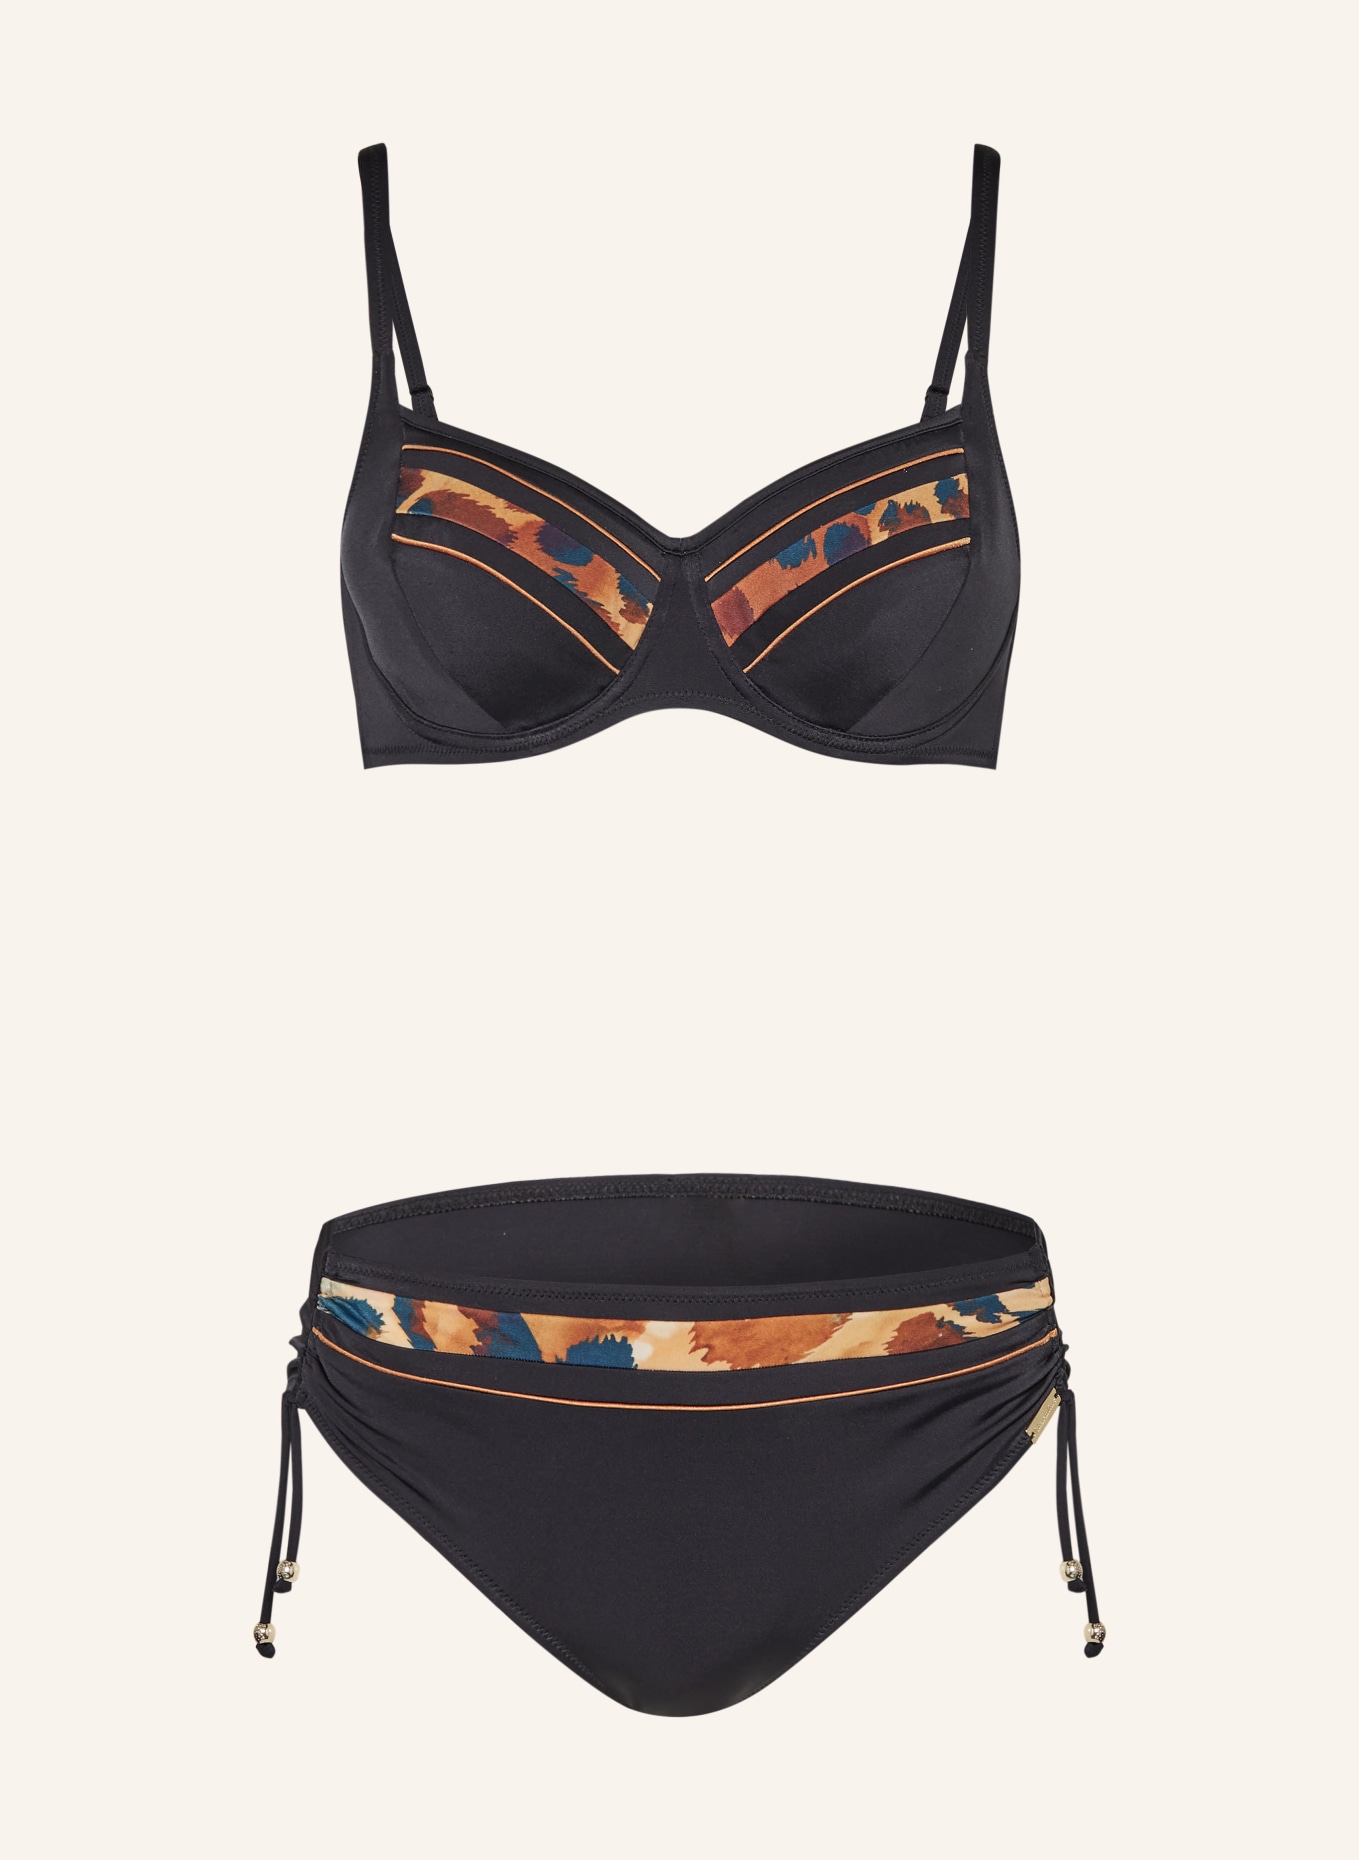 Charmline Bügel-Bikini DESERT SUNSET, Farbe: SCHWARZ/ DUNKELORANGE/ PETROL (Bild 1)